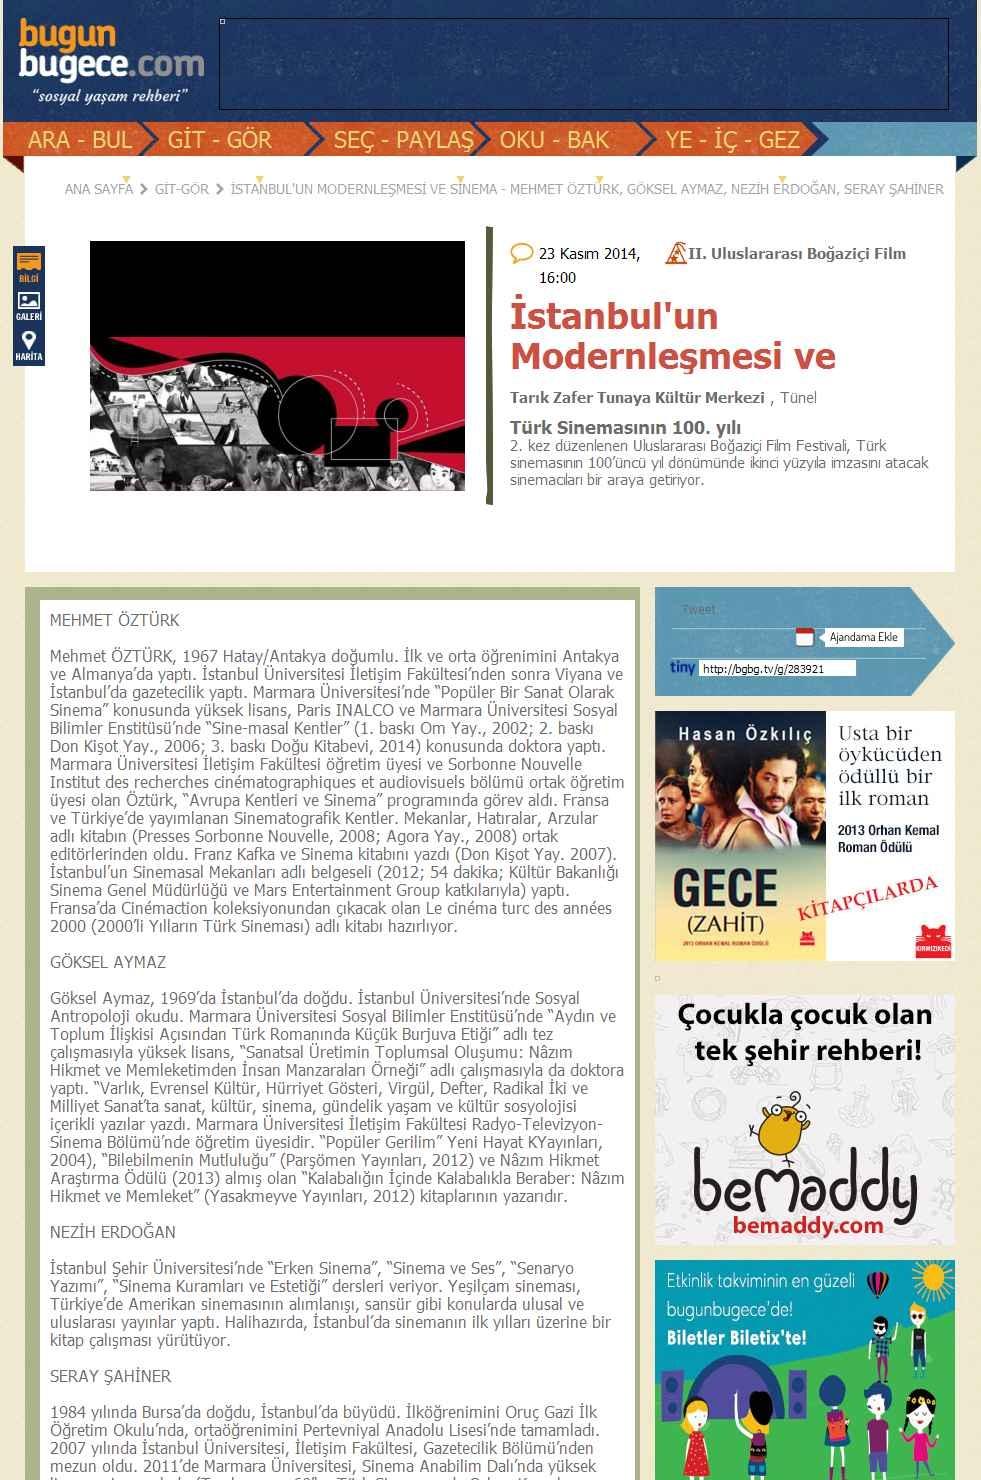 ISTANBUL'UN MODERNLESMESI VE SINEMA - MEHMET ÖZTÜRK, GÖKSEL AY... Portal : www.bugunbugece.